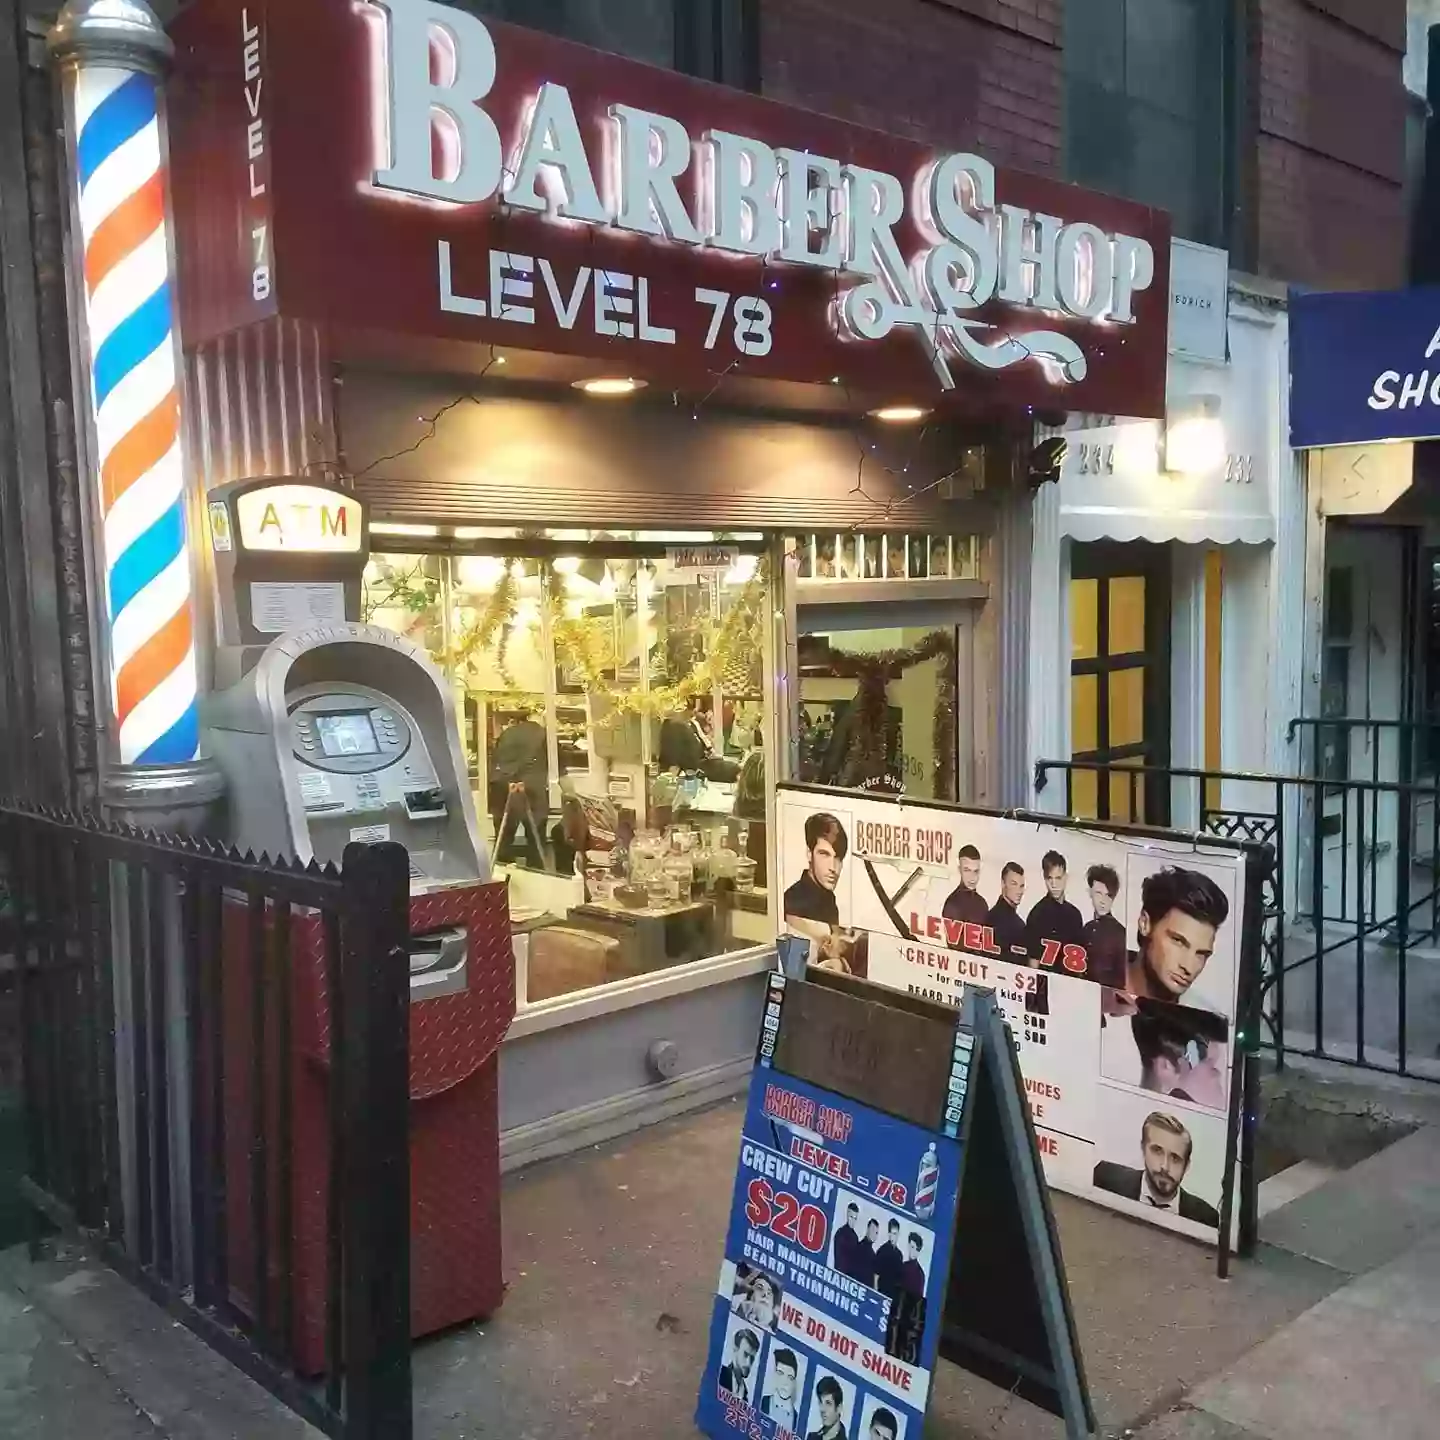 Level 78 Barber Shop